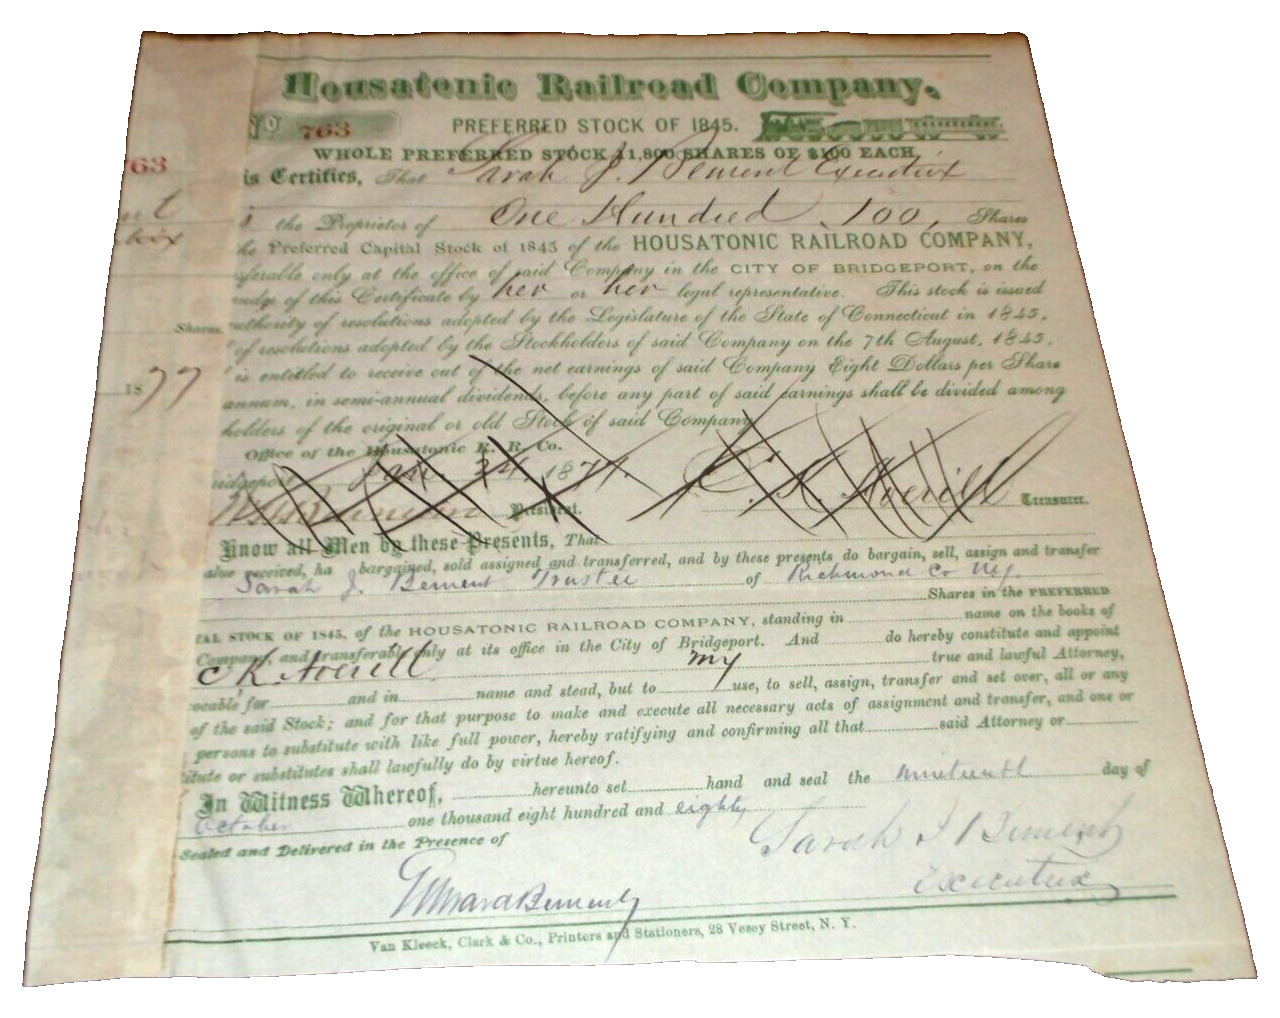 1845 HOUSATONIC PRE-NEW HAVEN RAILROAD PREFERRED STOCK CERTIFICATE